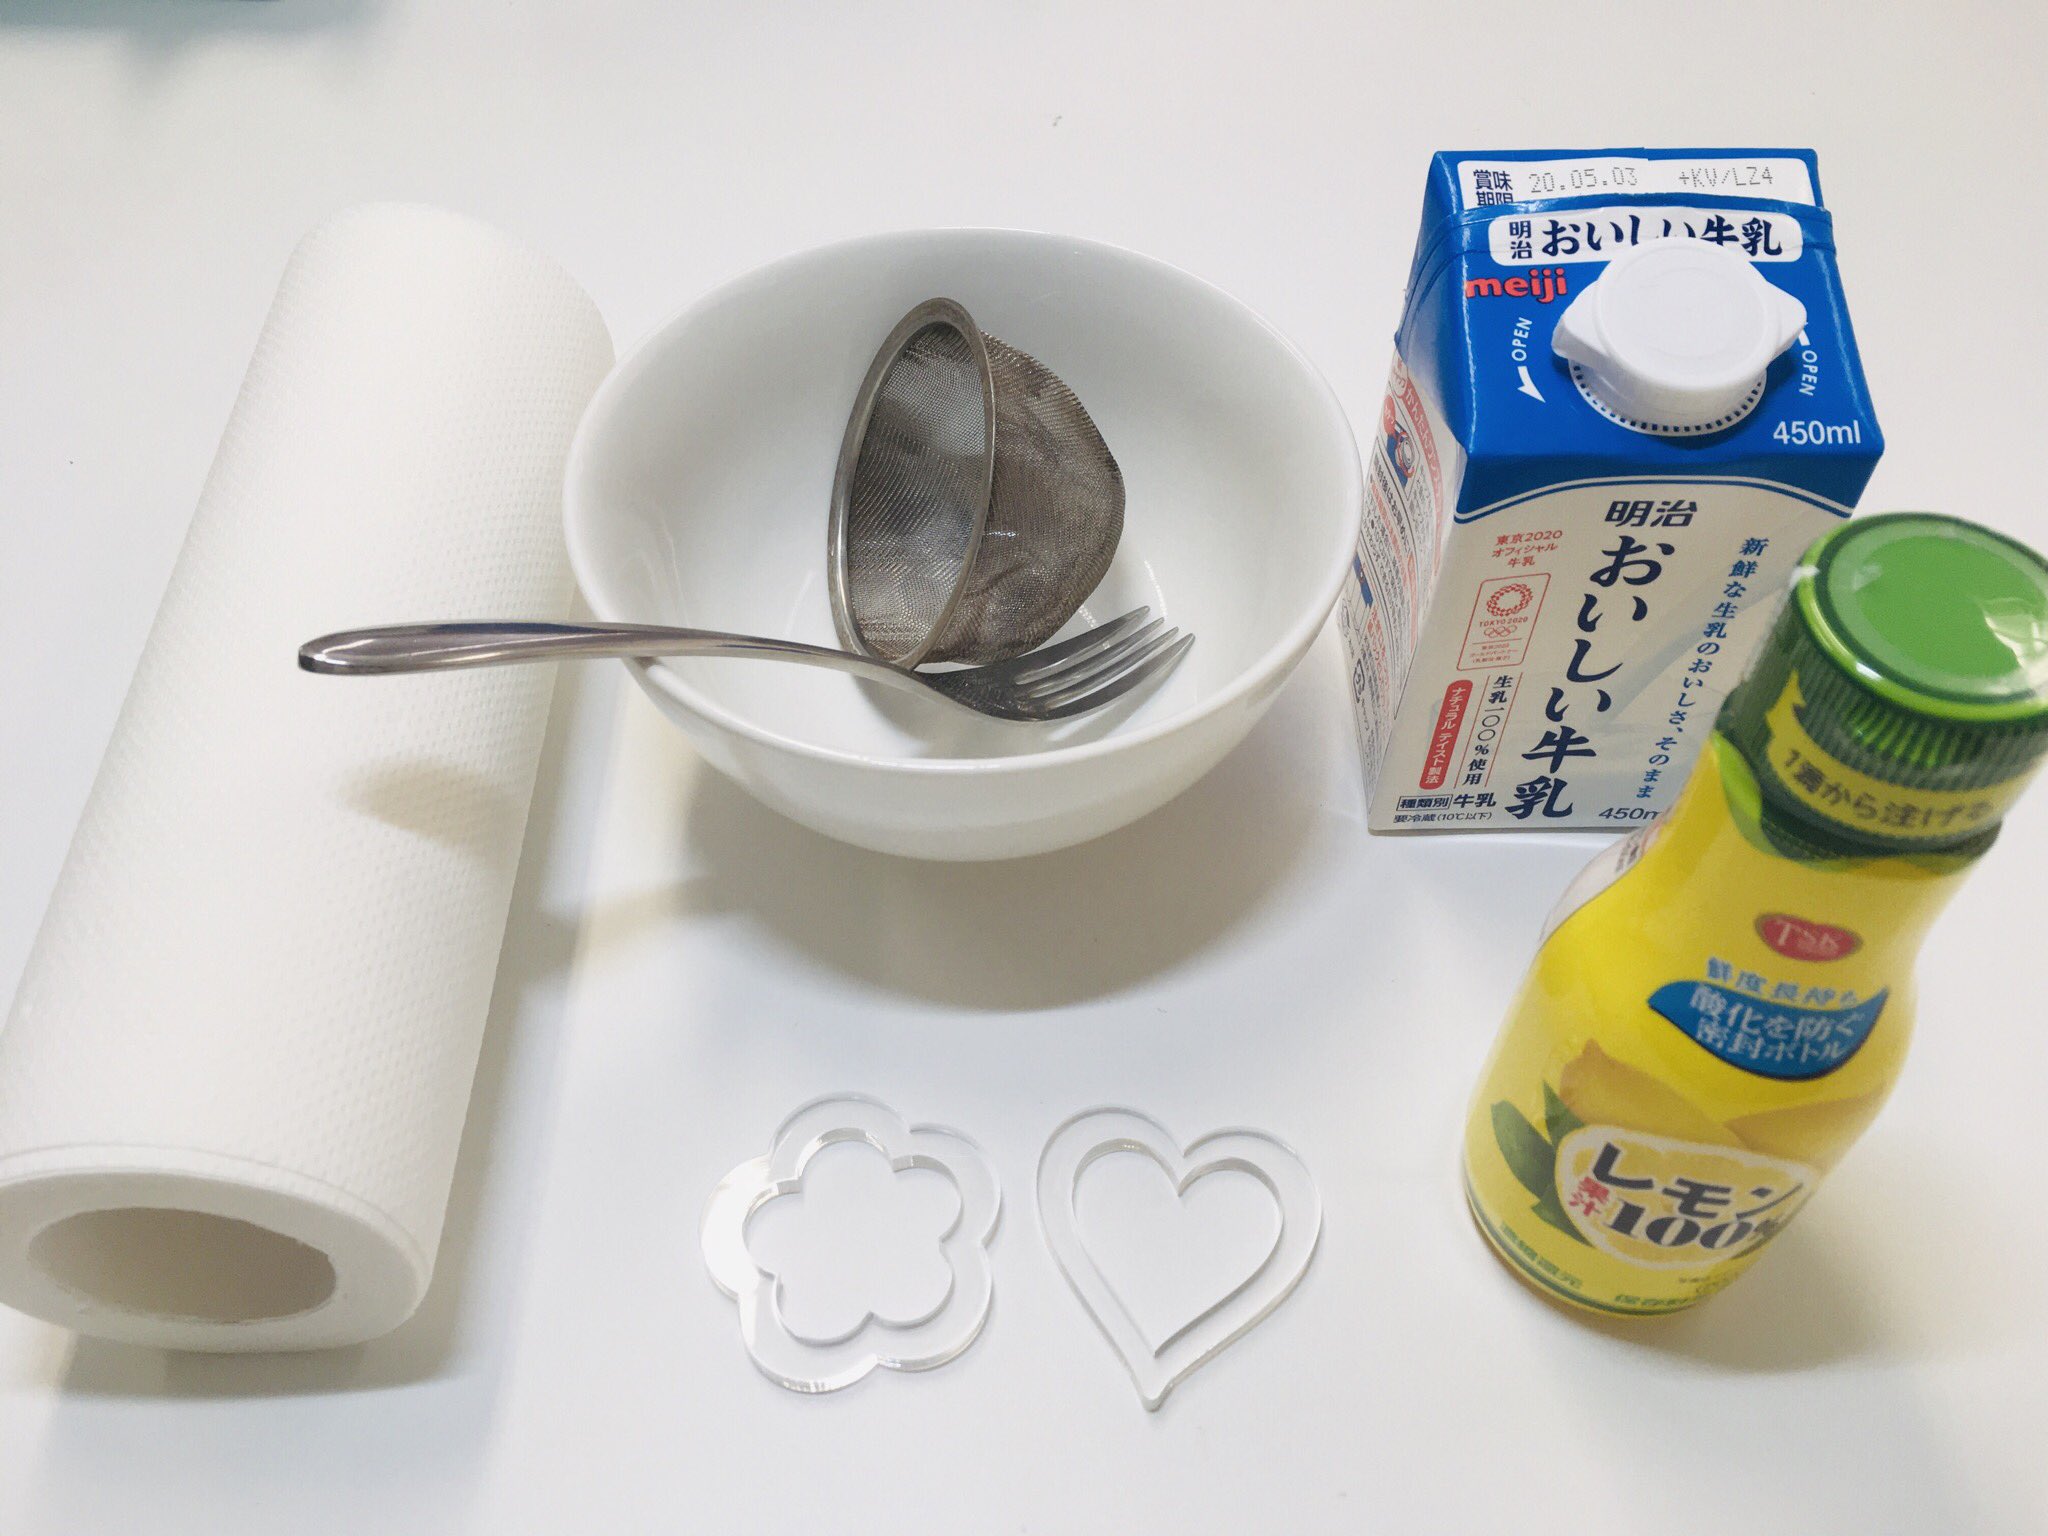 北九州イノベーションギャラリー No Twitter おうちで実験 牛乳プラスチックを作ろう 食べれません 牛乳でプラスチックが作れるって知ってましたか 私は知りませんでした 材料 牛乳 豆乳でも可 レモン汁 お酢でも可 準備 コップやボウル 網目の